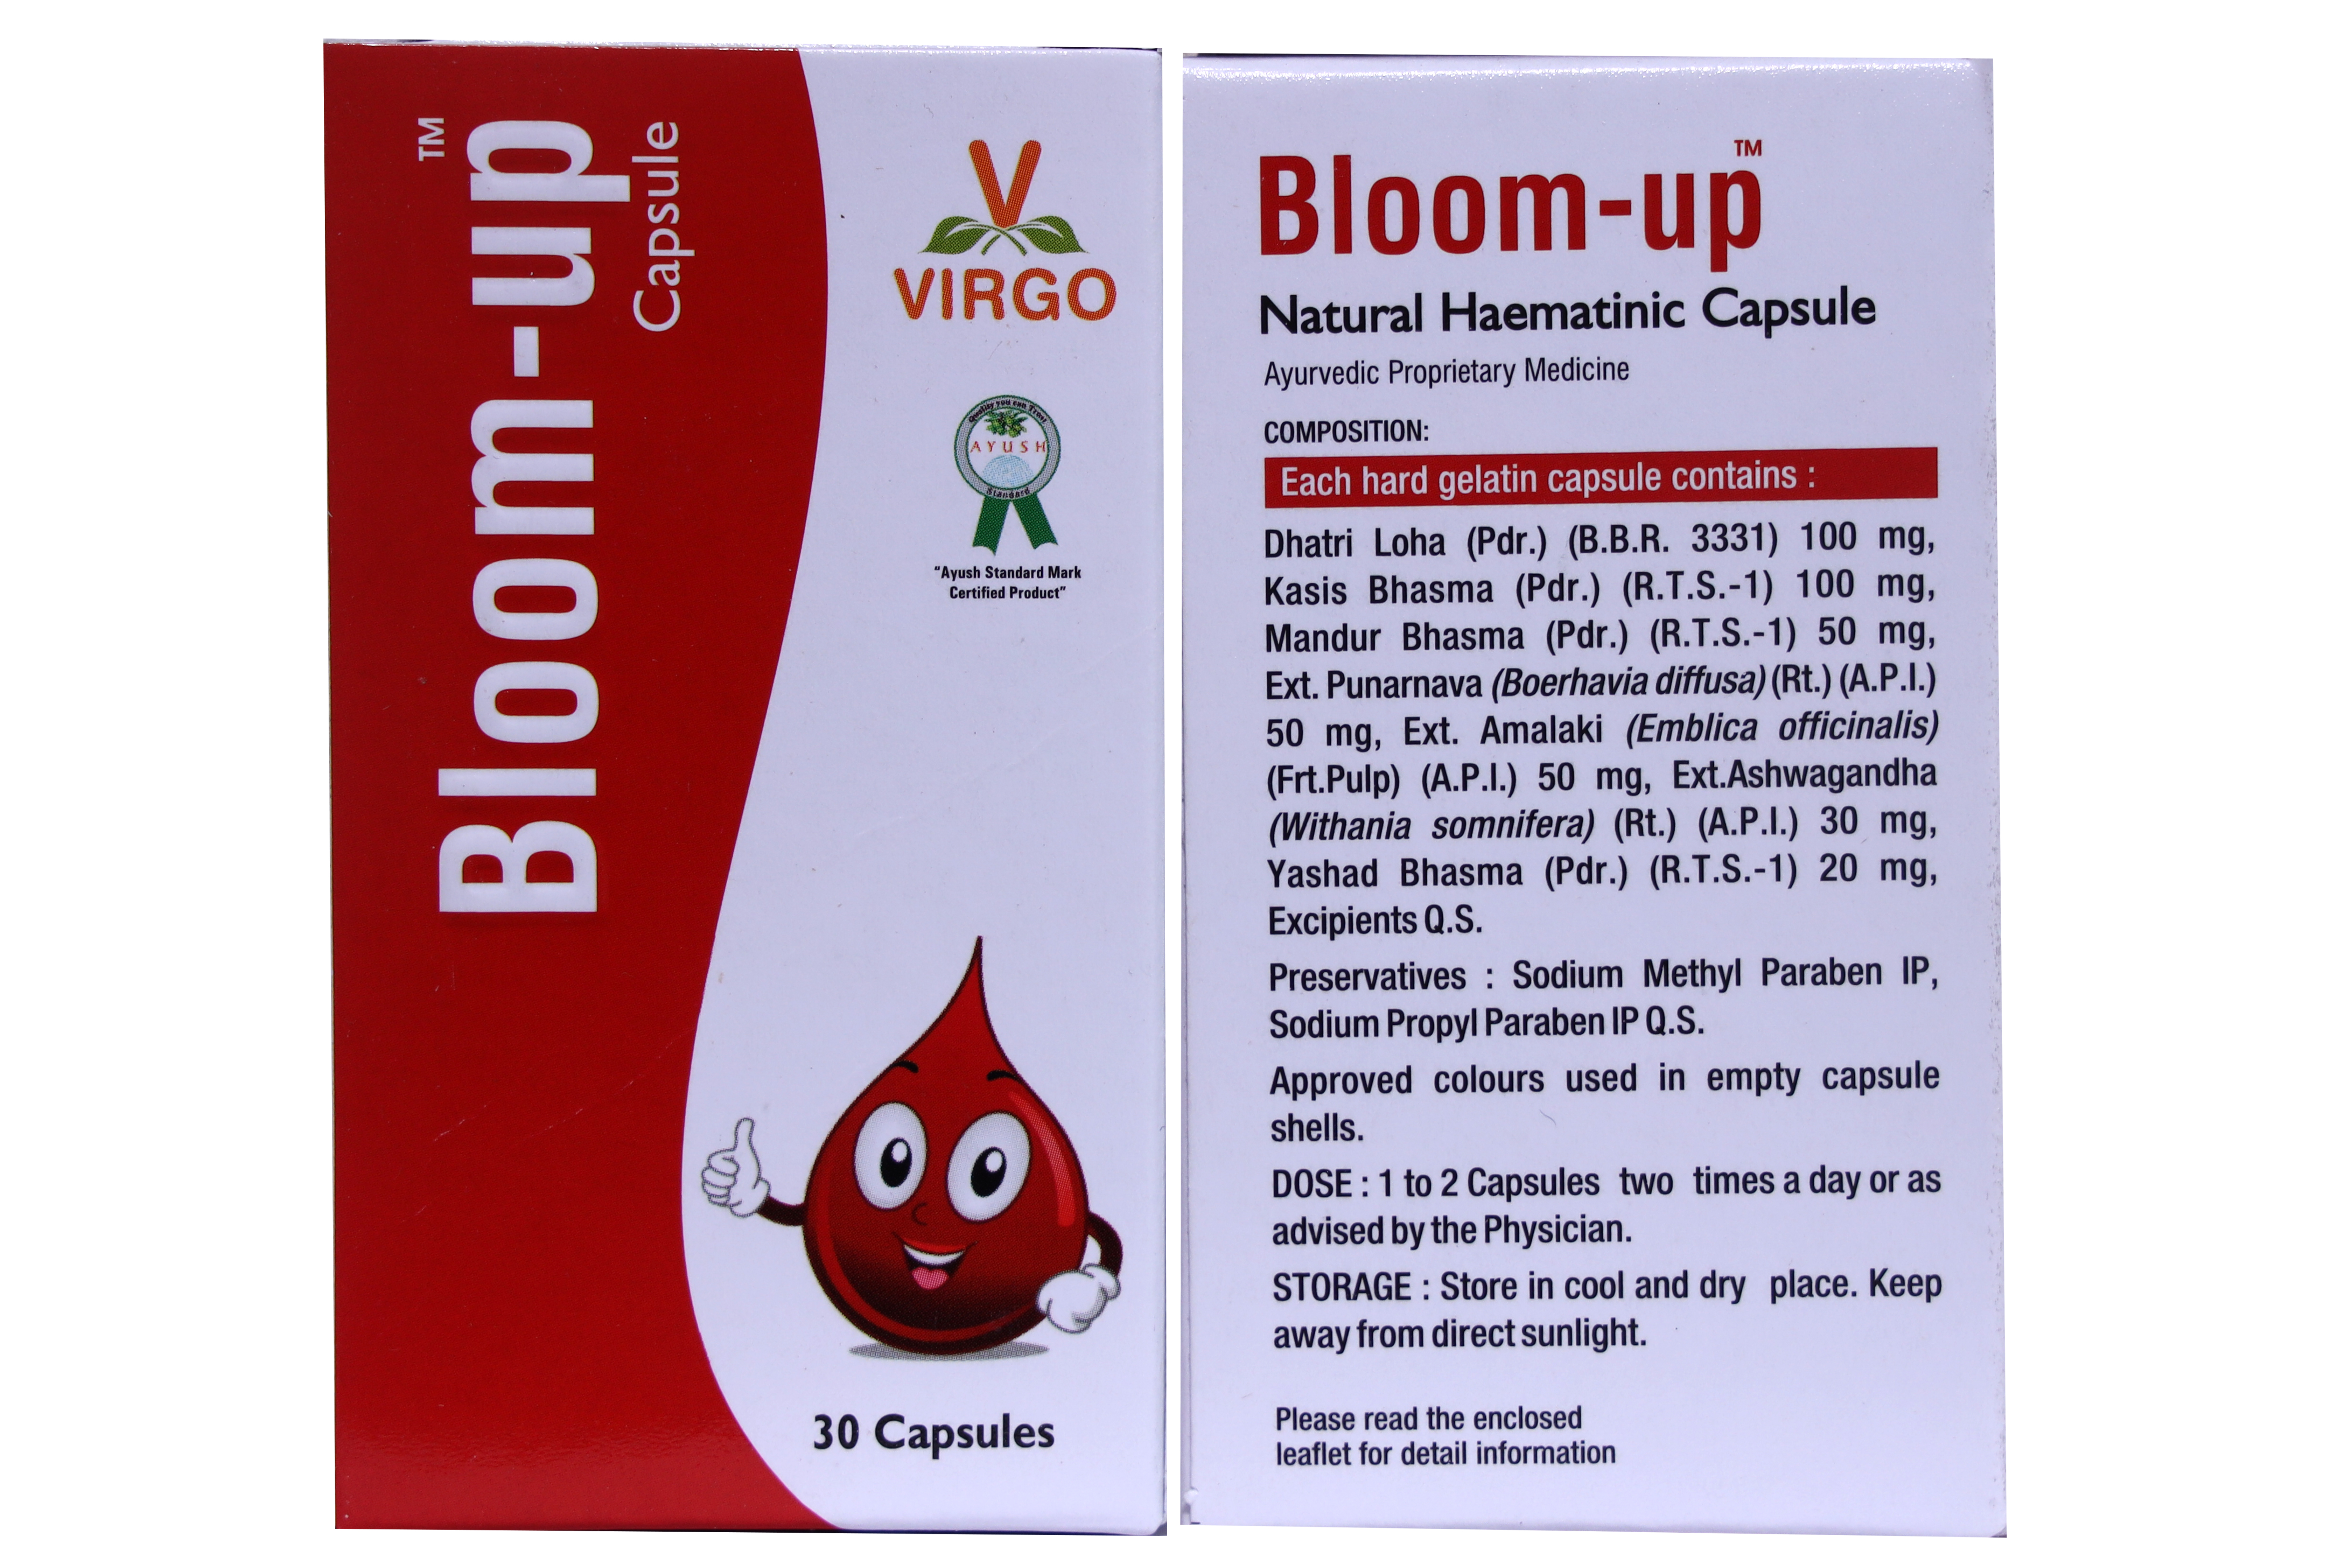 Buy Virgo Bloom-Up Capsule at Best Price Online